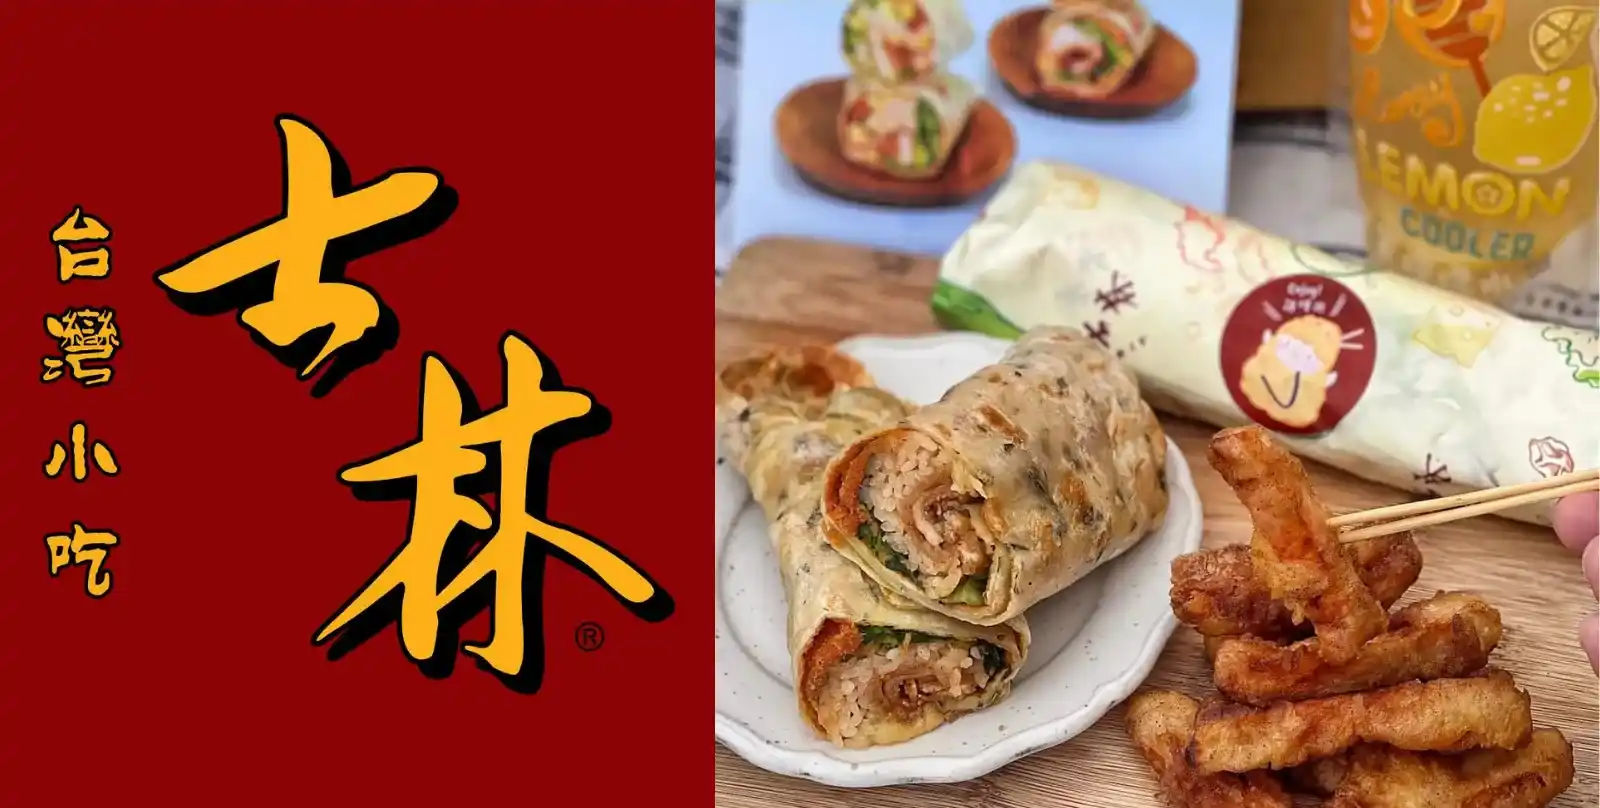 Shihlin Taiwan Street Snacks Singapore Menu & Price 2023